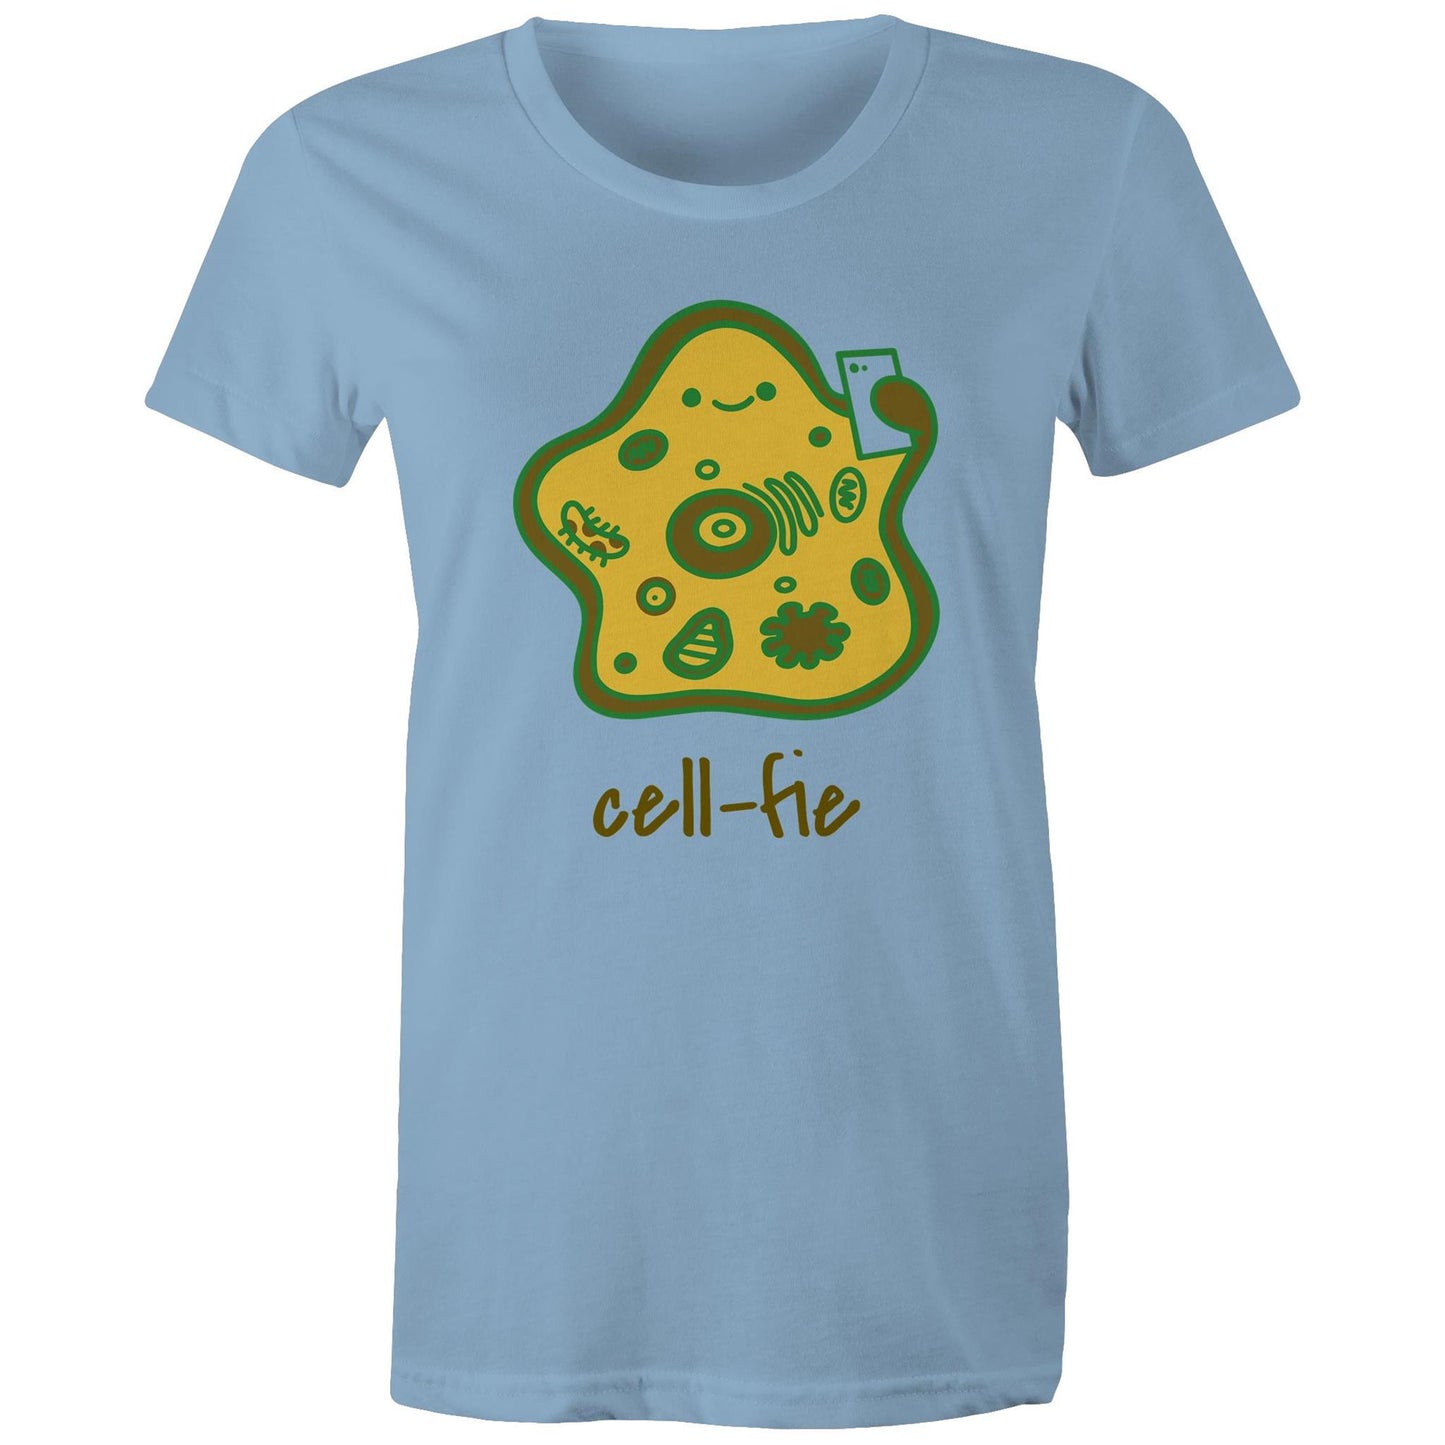 Cell-fie - Womens T-shirt Carolina Blue Womens T-shirt Science